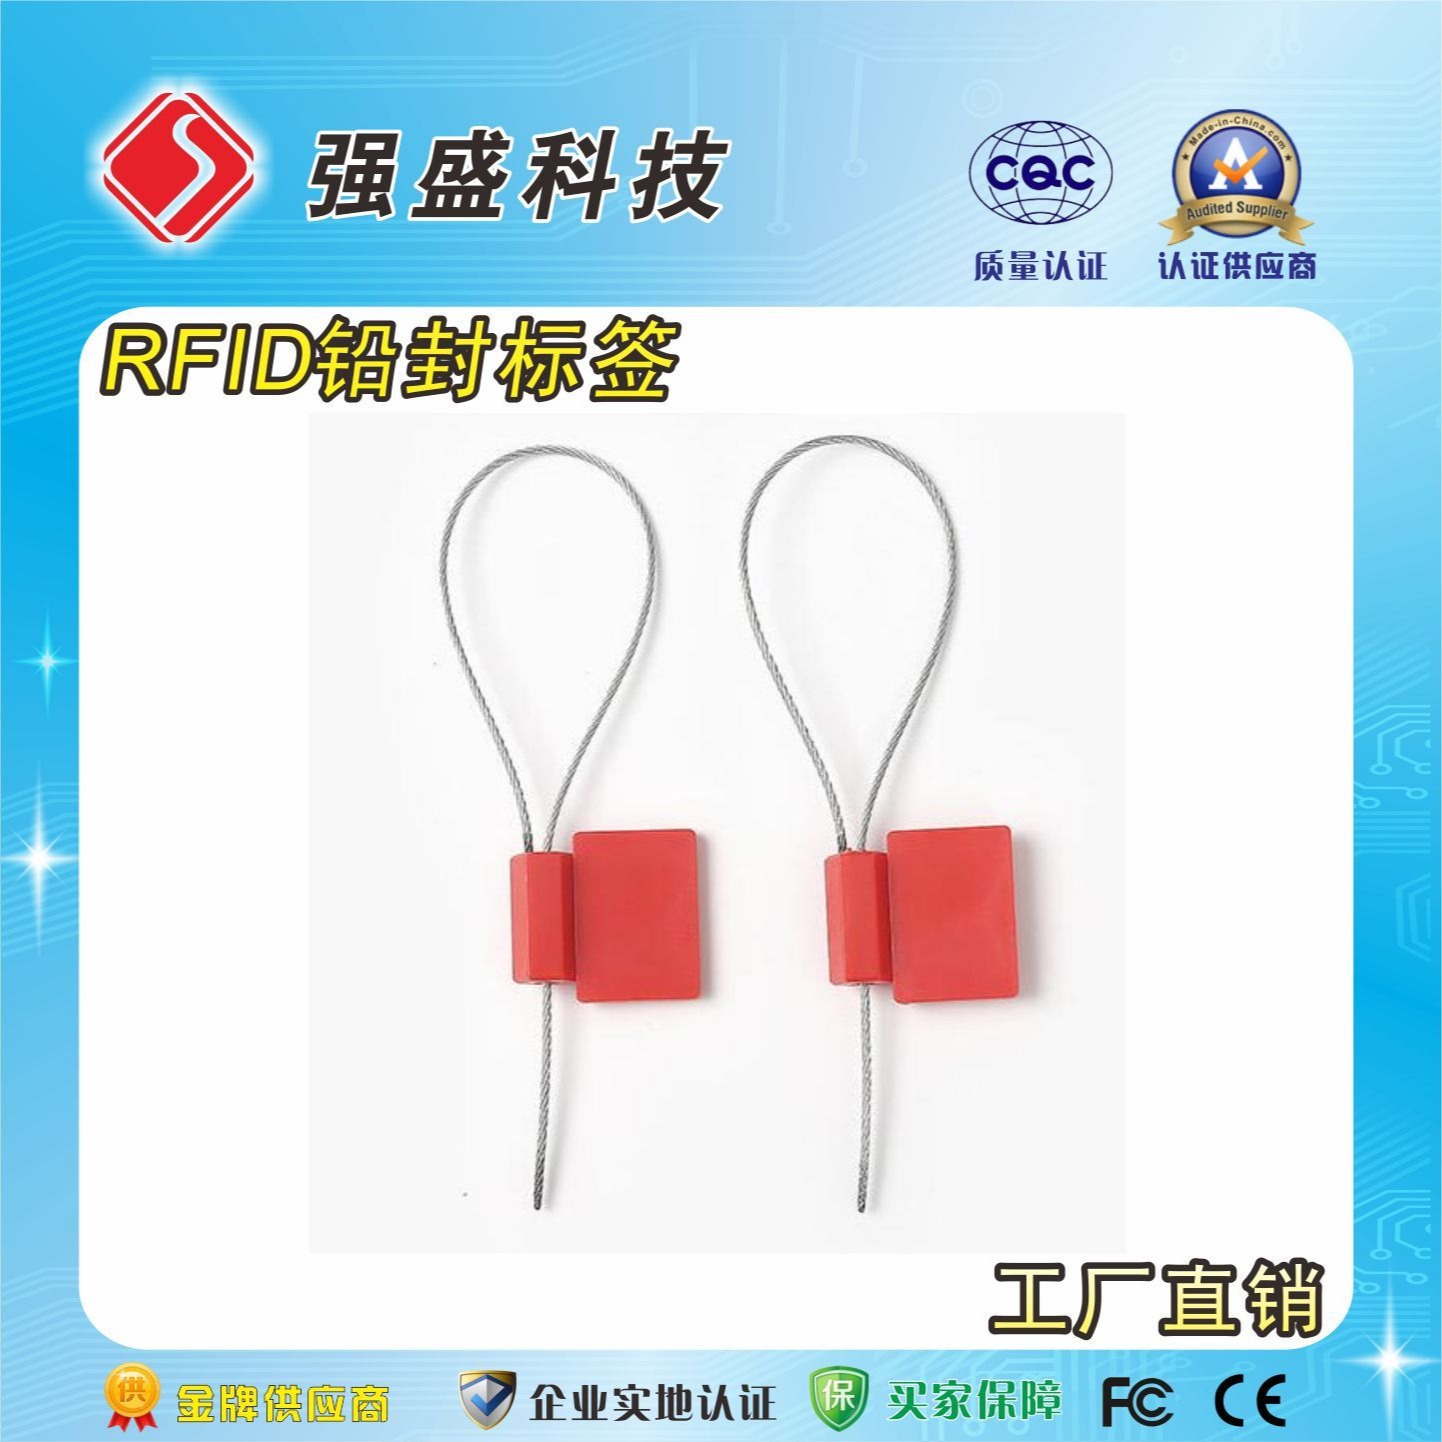 厂家供应铅封标签 铅封RFID电子标签价格 高频钢丝绳铅封制作成本10